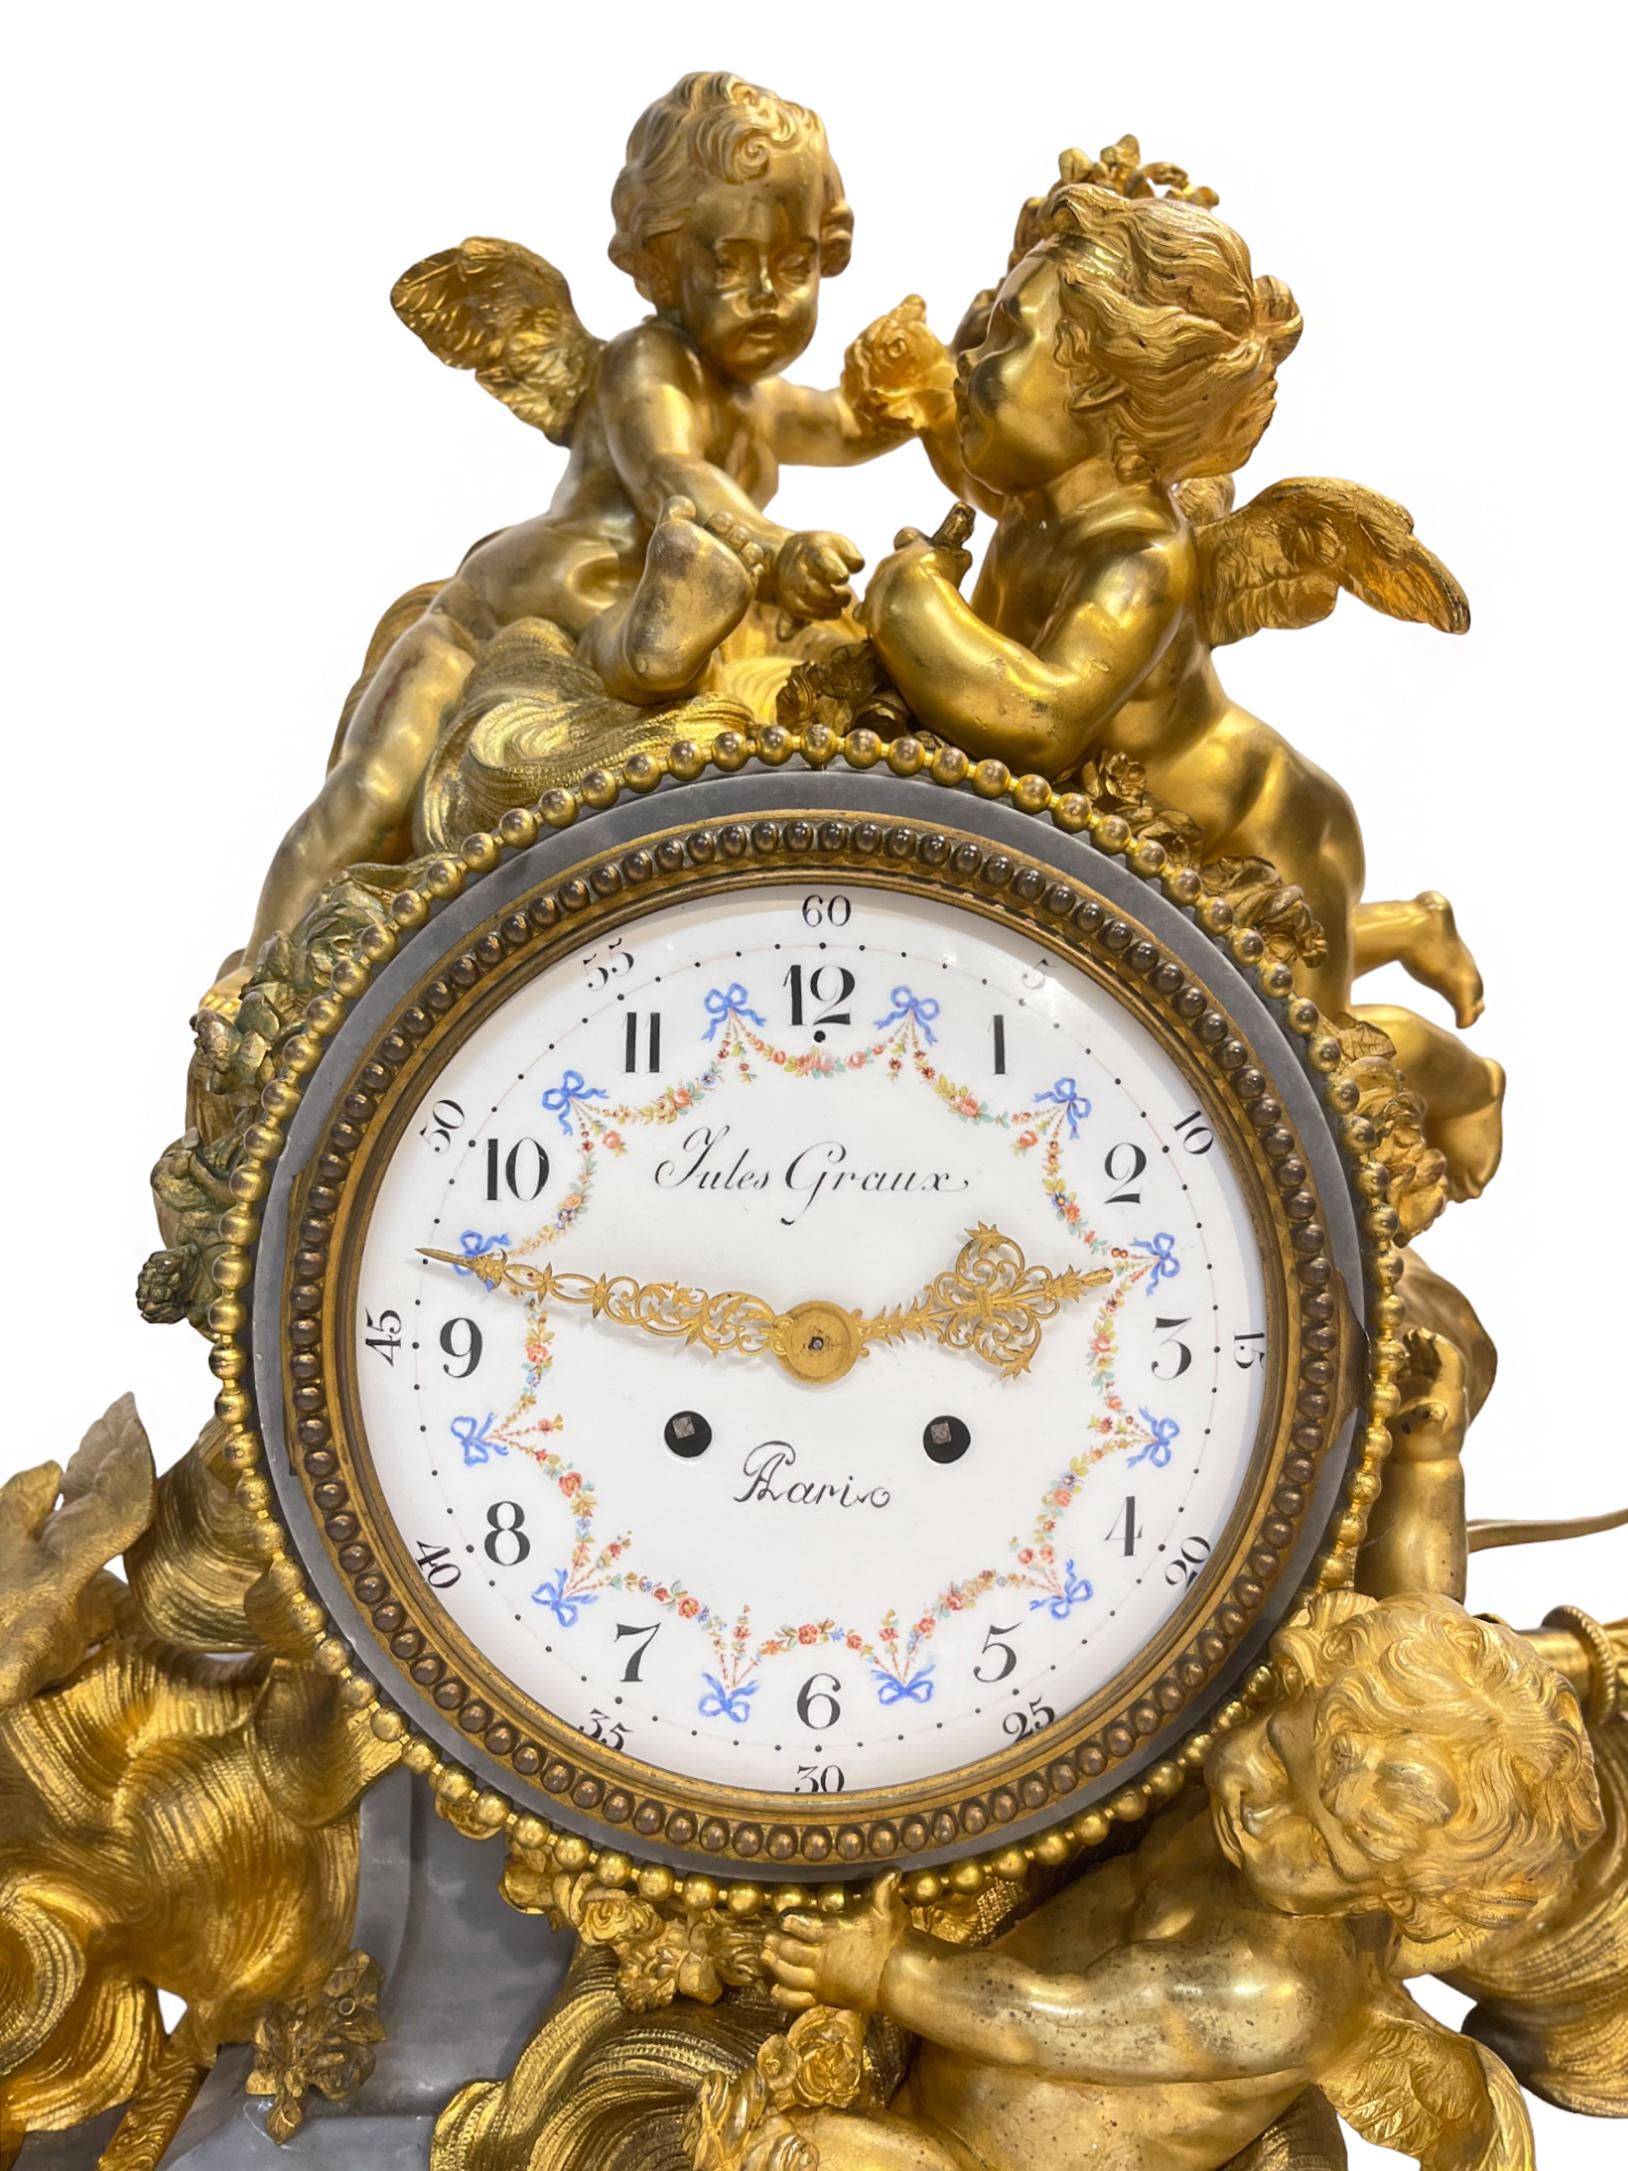 Une grande horloge de cheminée figurative en bronze doré et marbre grège de style Louis XVI est surmontée de trois putti en bronze doré qui suspendent des ornements floraux parmi des nuages avec des oiseaux amoureux et l'arc de Cupidon. Elle repose